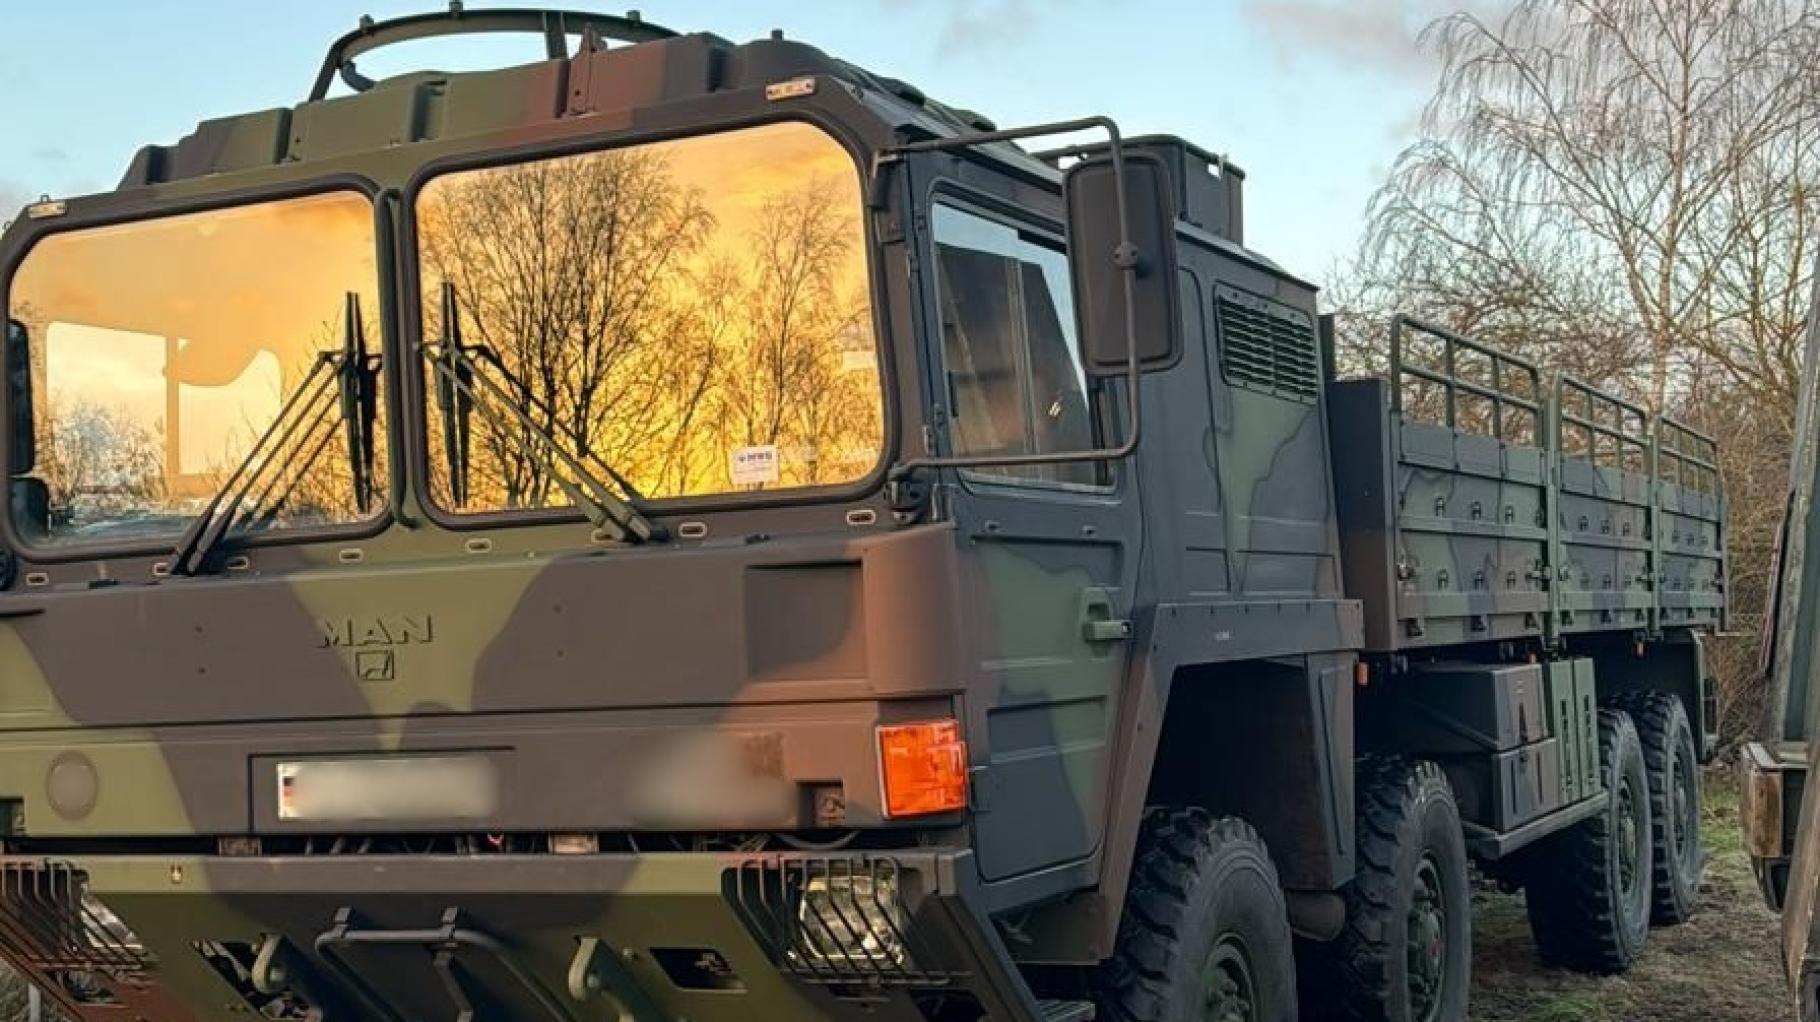 Bundeswehr-Lkw nach Diebstahl in Schwerin weiterhin spurlos verschwunden